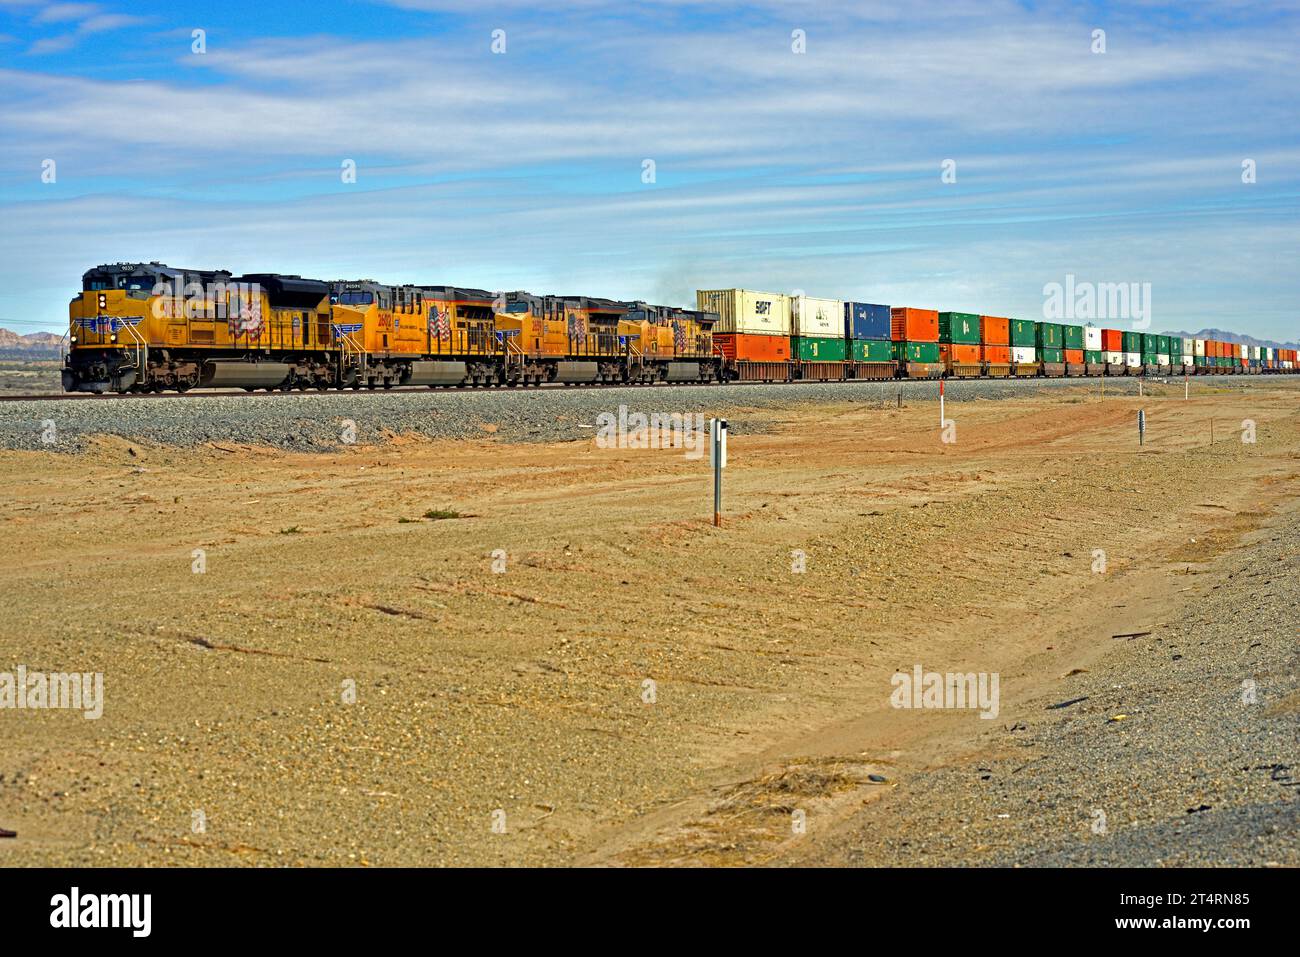 Il treno Union Pacific Intermodal Freight a doppio strato si trova in direzione ovest verso Long Beach vicino a Niland sulla Sunset Route nella California meridionale. Foto Stock